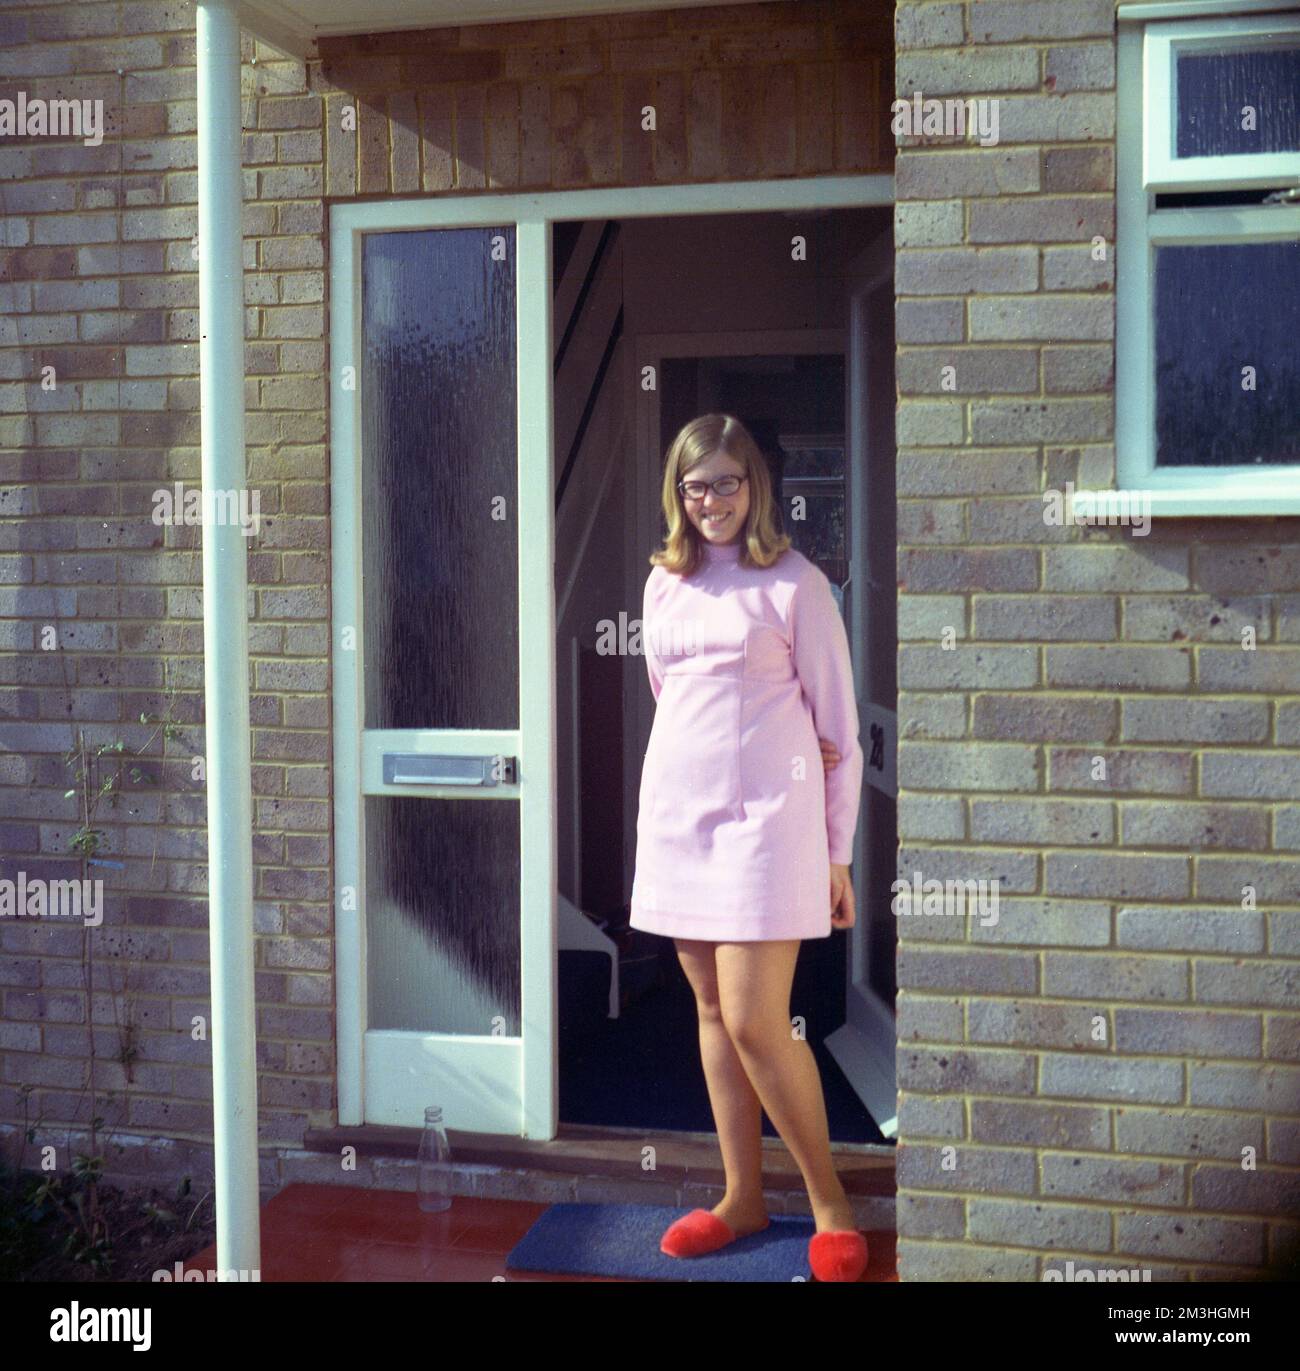 1970, historique, une jeune femme dans sa vingtaine debout pour une photo à l'entrée d'une maison, portant une robe courte rose, à la mode dans cette époque et sur ses pieds, rouge duveteux pantoufles, Angleterre, Royaume-Uni, une bouteille de lait vide est à la porte Banque D'Images